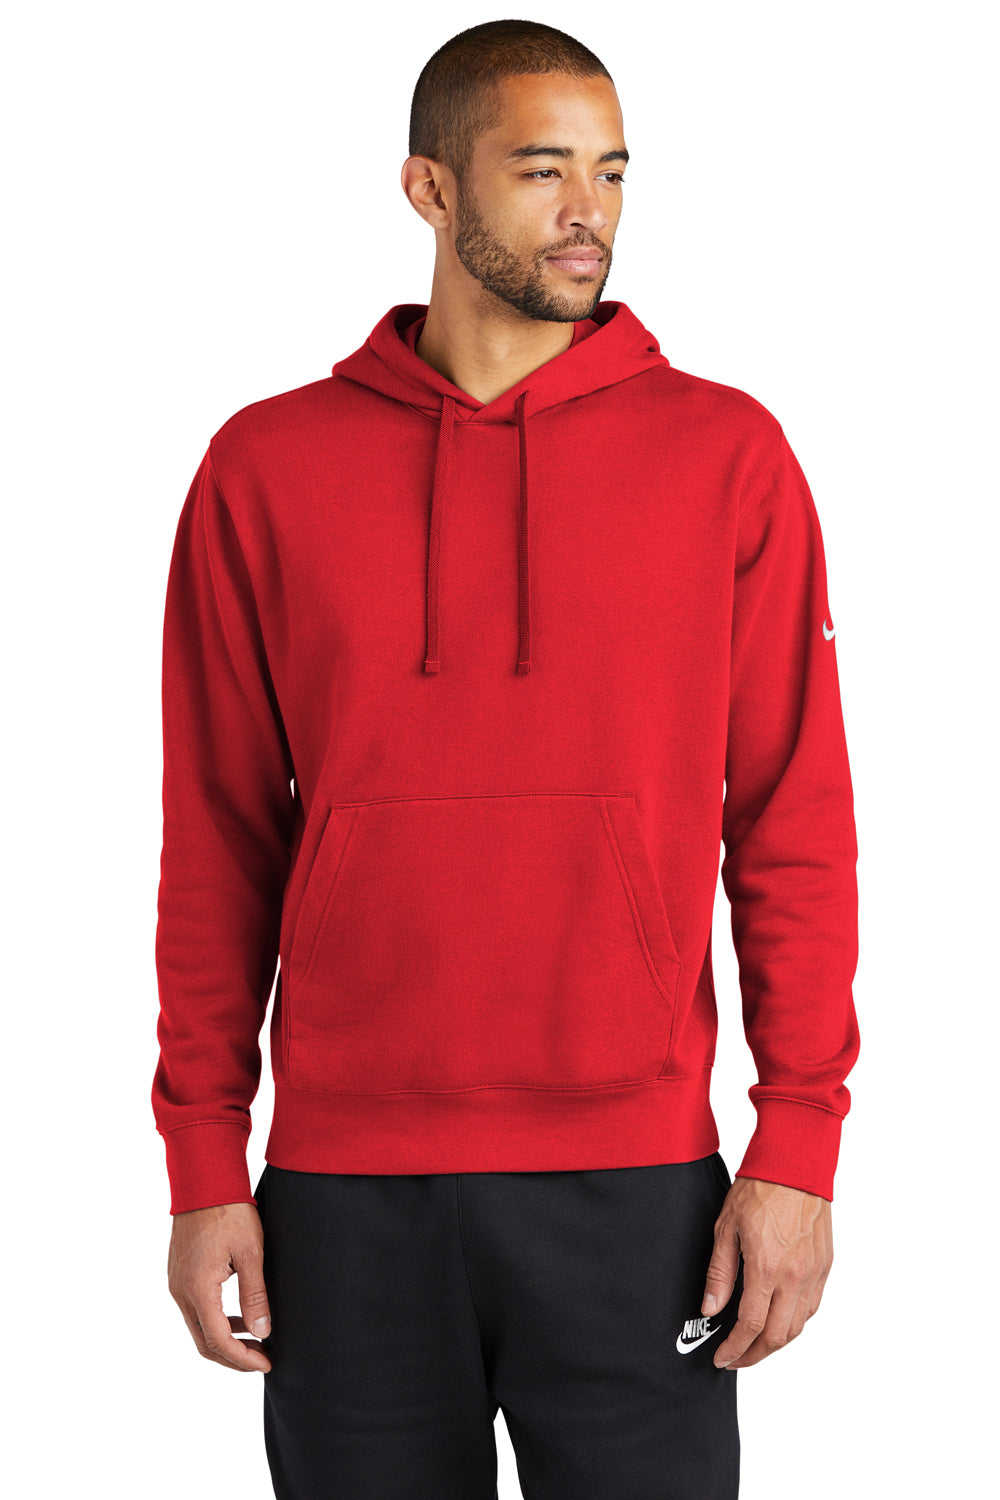 Nike NKDR1499 Mens Club Fleece Hooded Sweatshirt Hoodie University Red Model Front